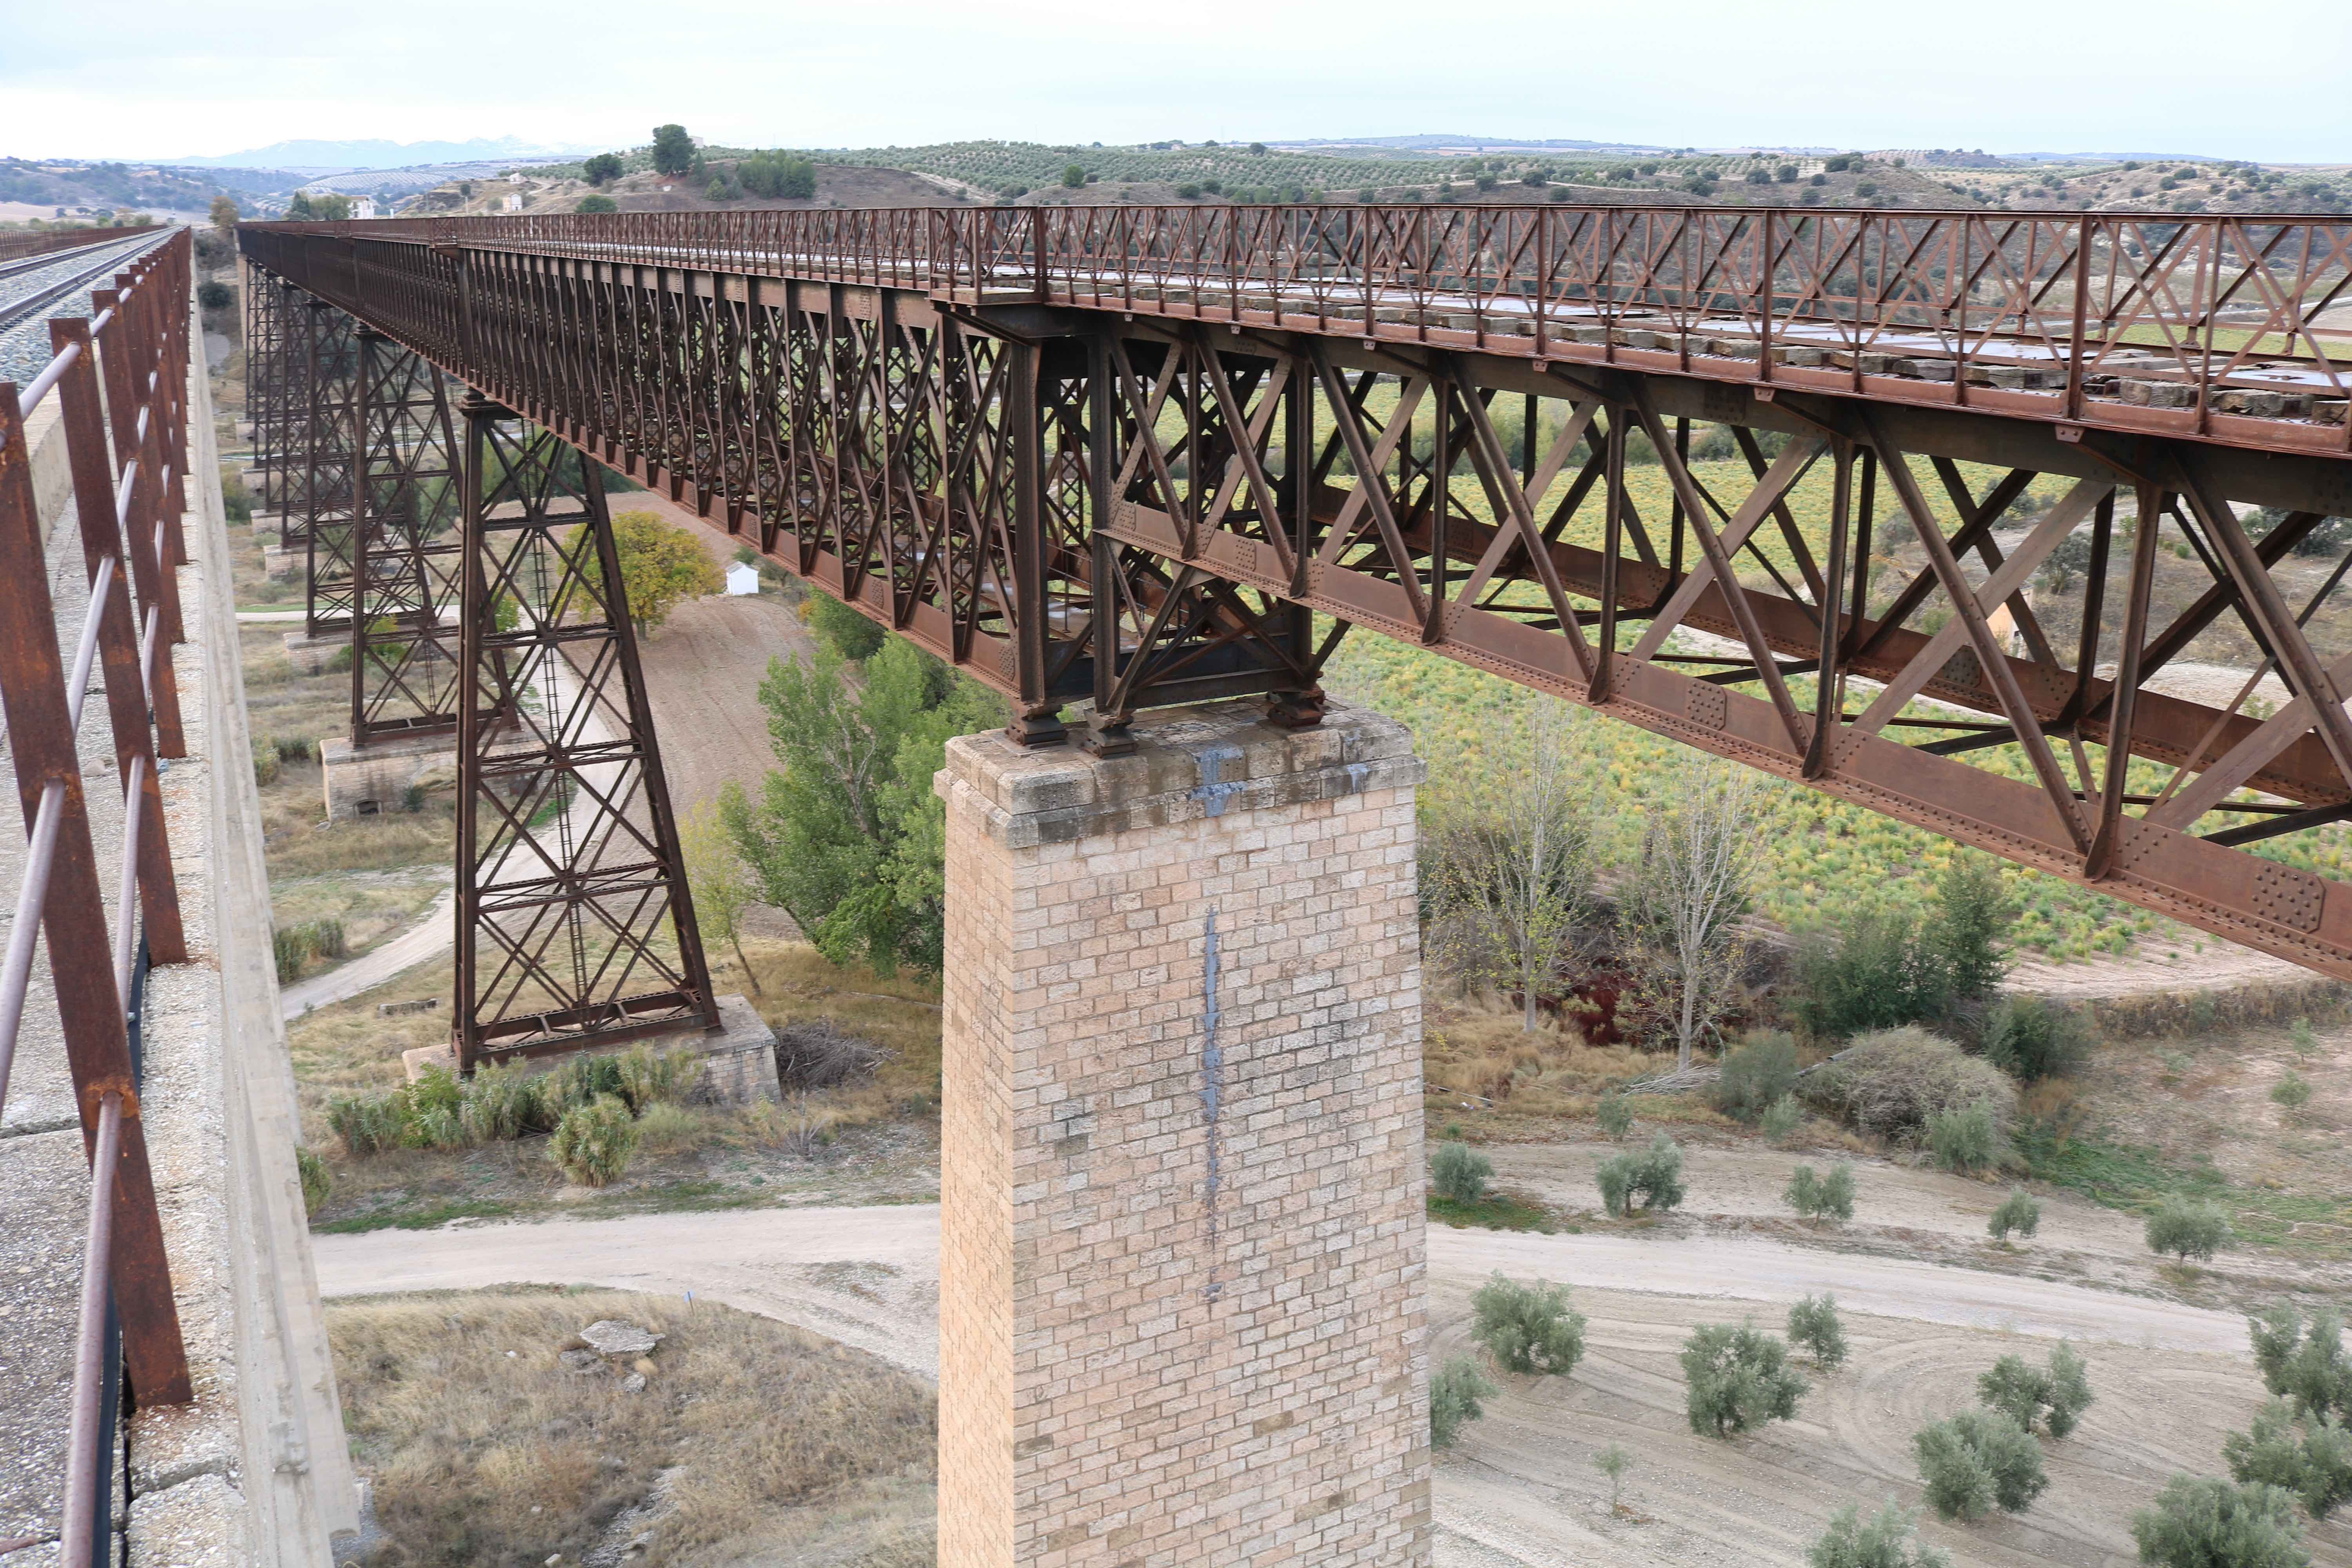  viaducto de Guadahortuna